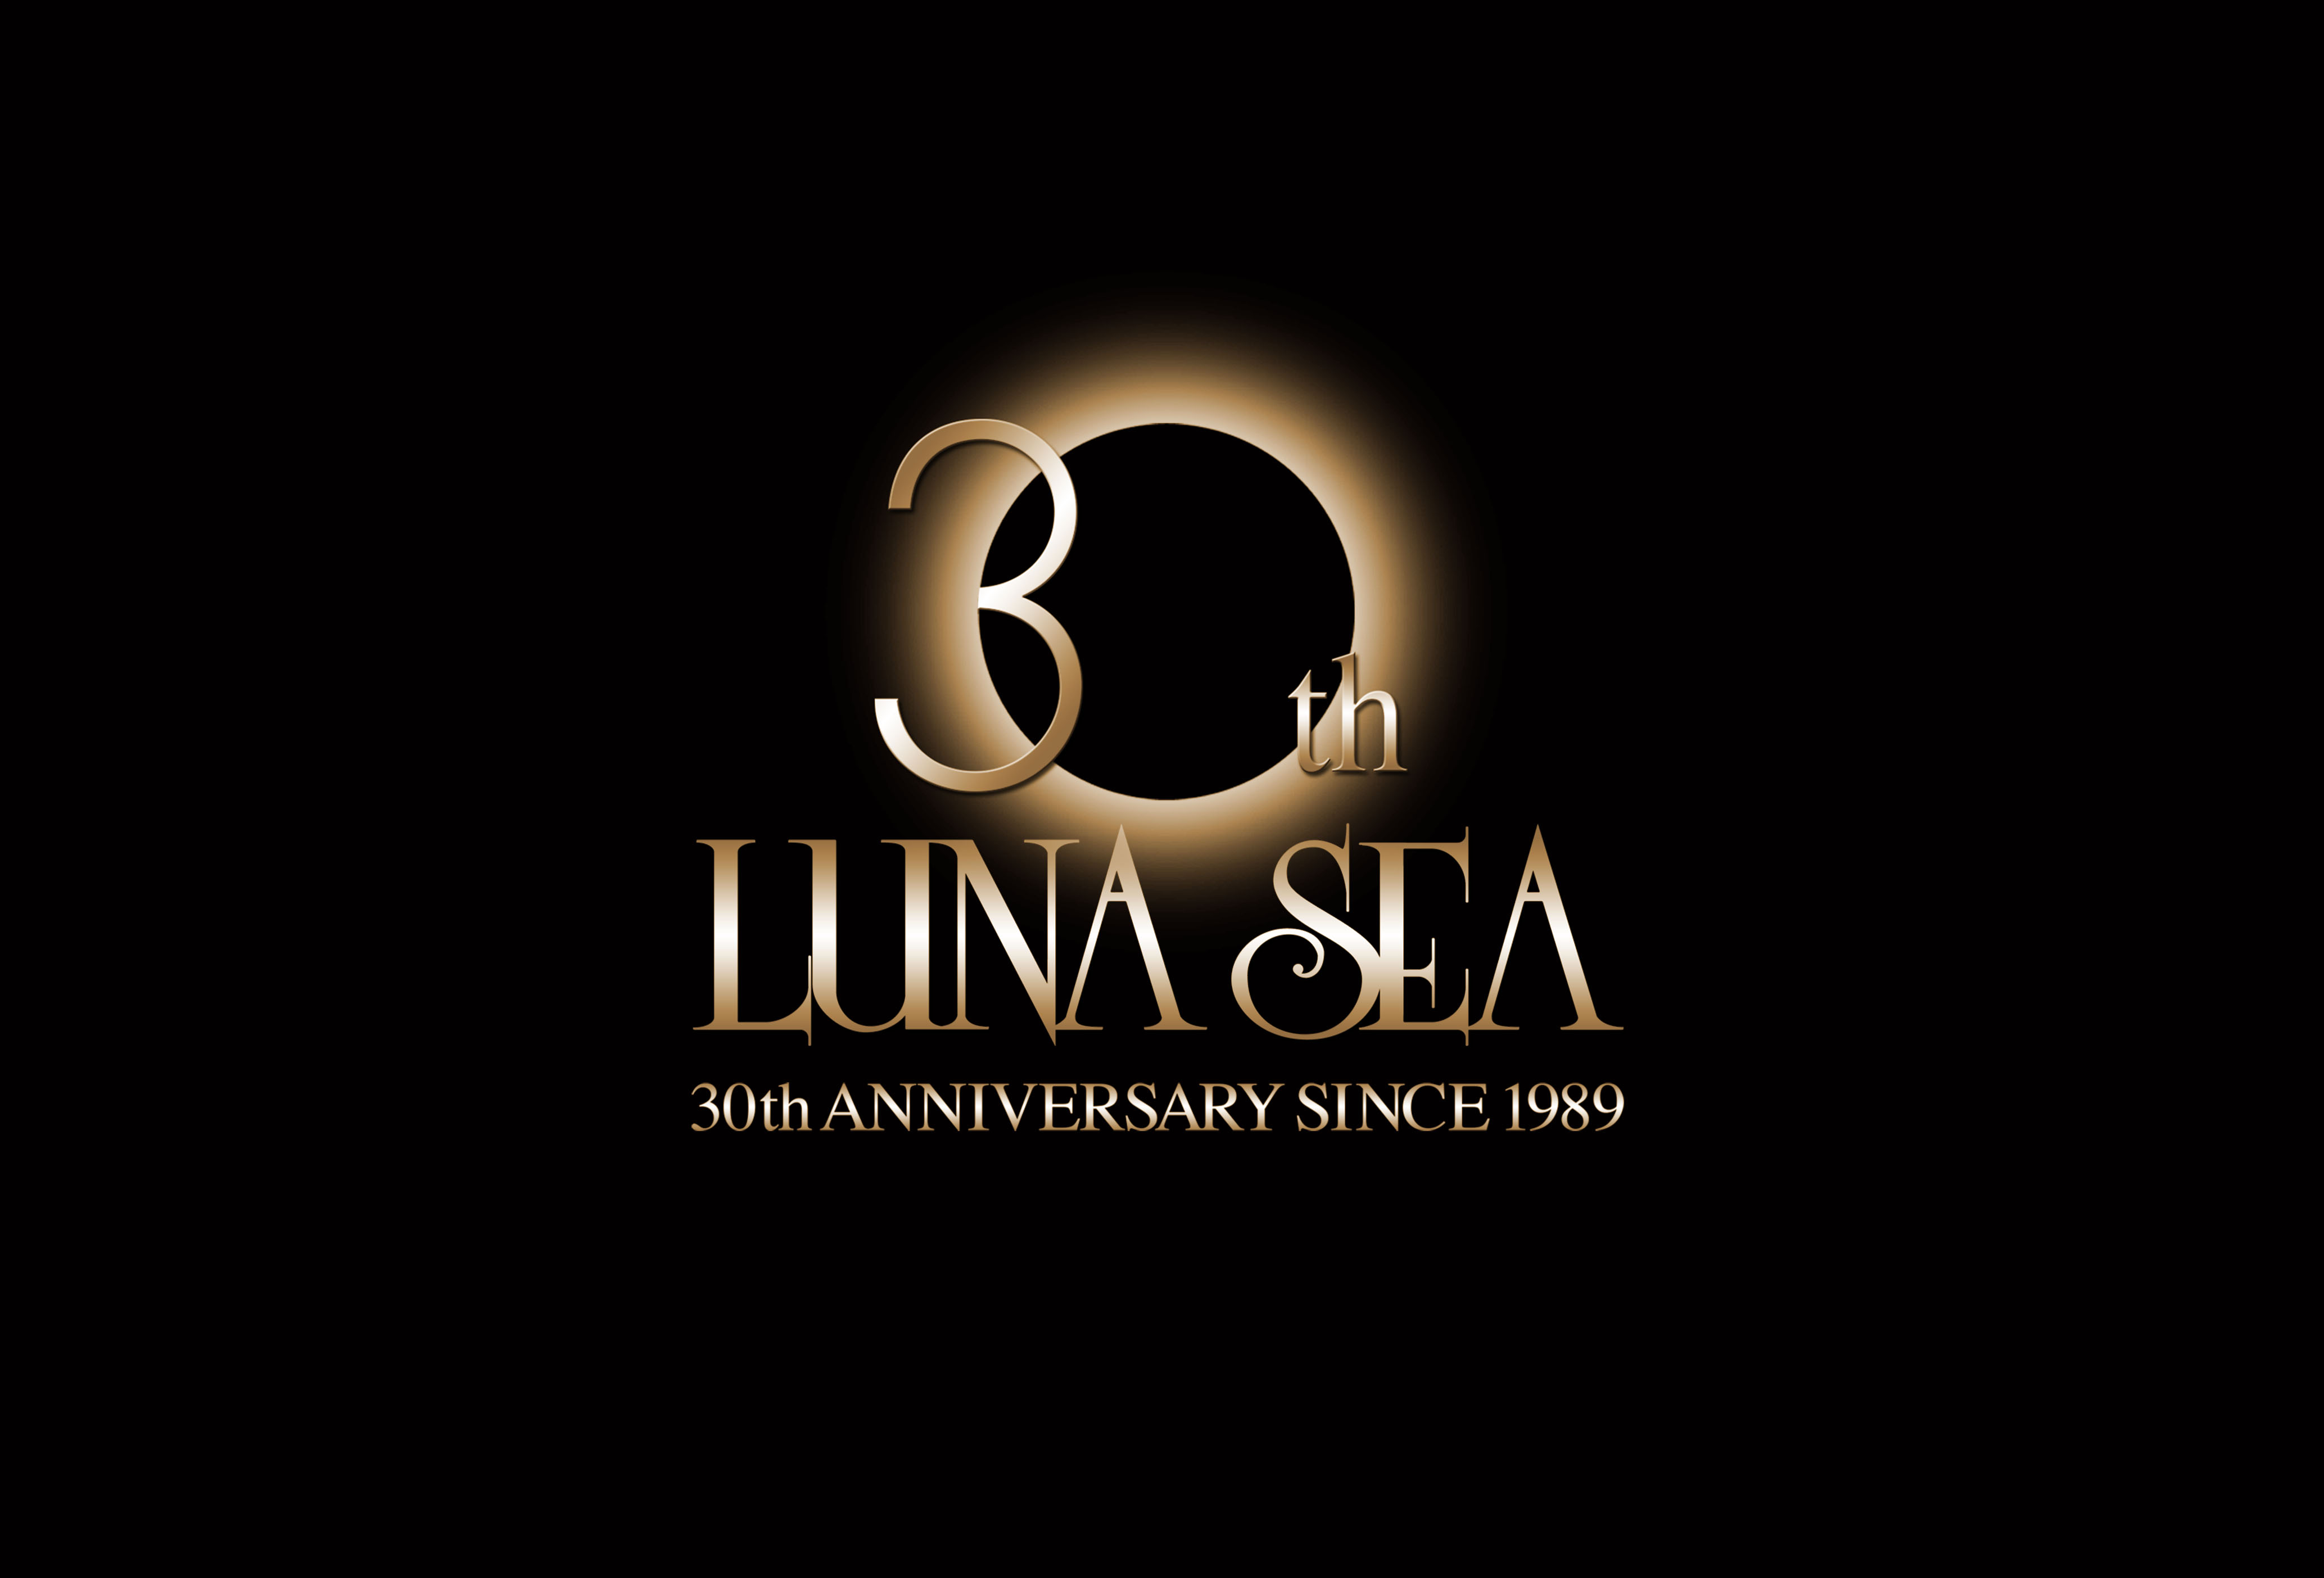 Luna Sea 結成30周年wowowスペシャル 放送決定 株式会社wowowのプレスリリース